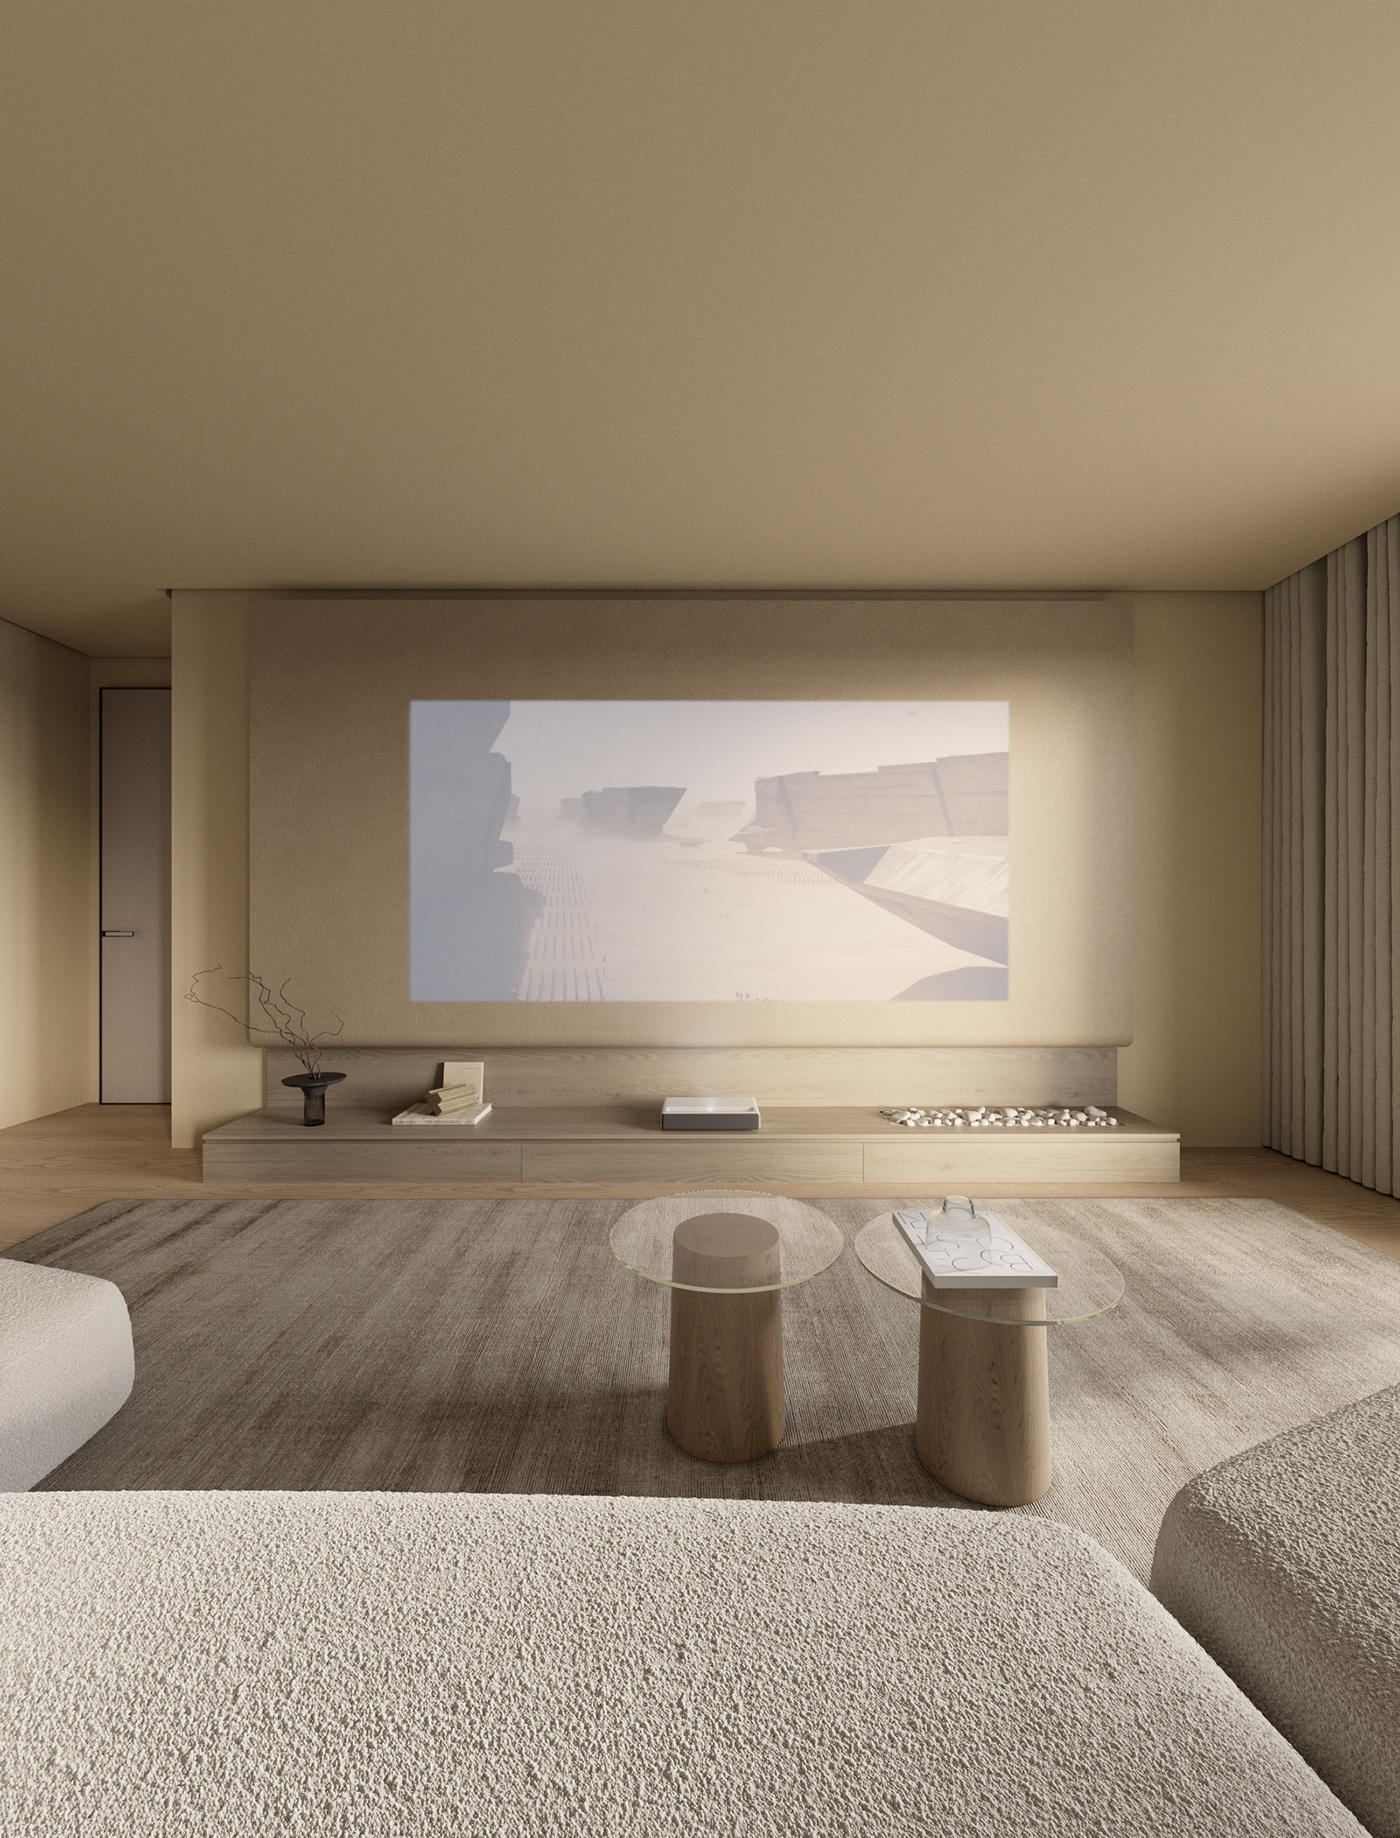 modern interior design  visualization 3ds max architecture corona Render living room future futuristic